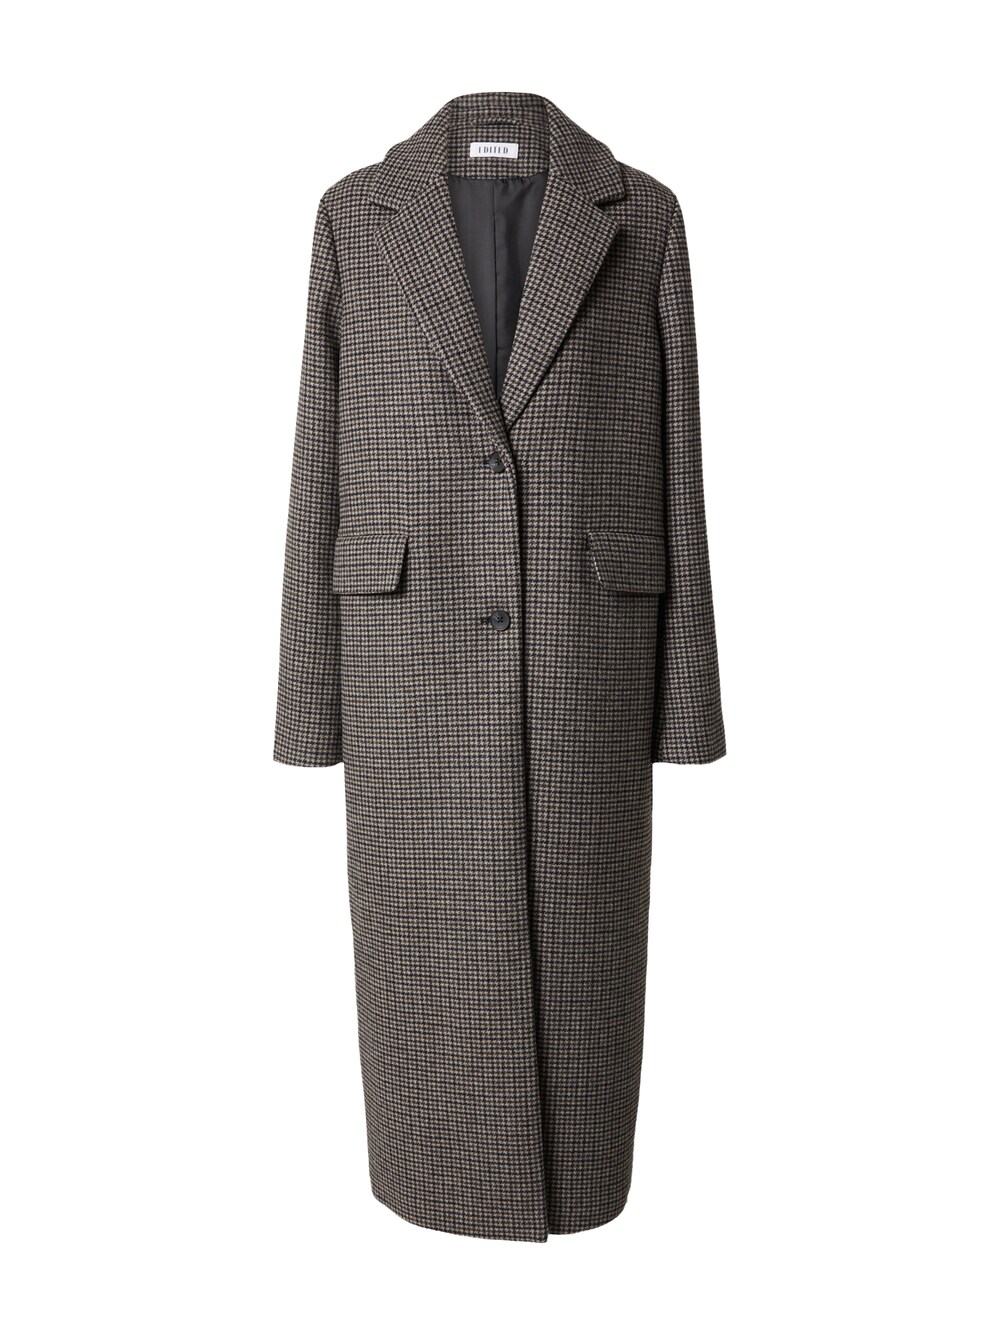 Межсезонное пальто EDITED Ninette, серый межсезонное пальто edited tosca пестрый серый